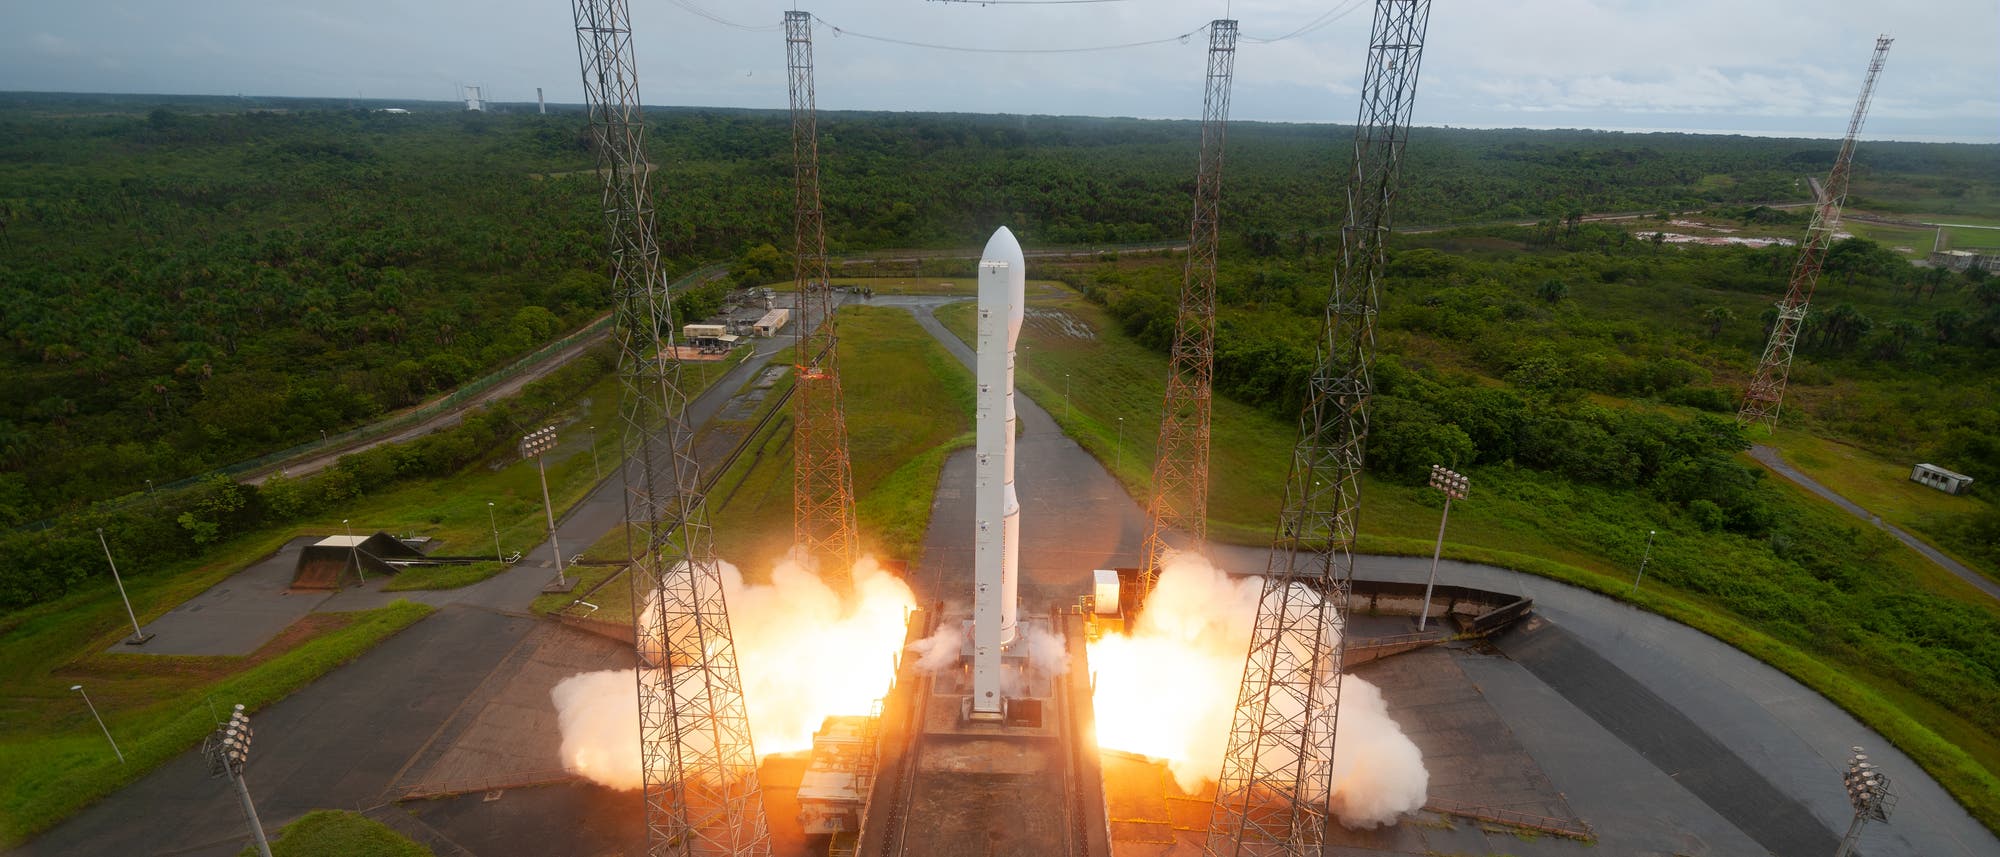 Raketenstart der Vega C